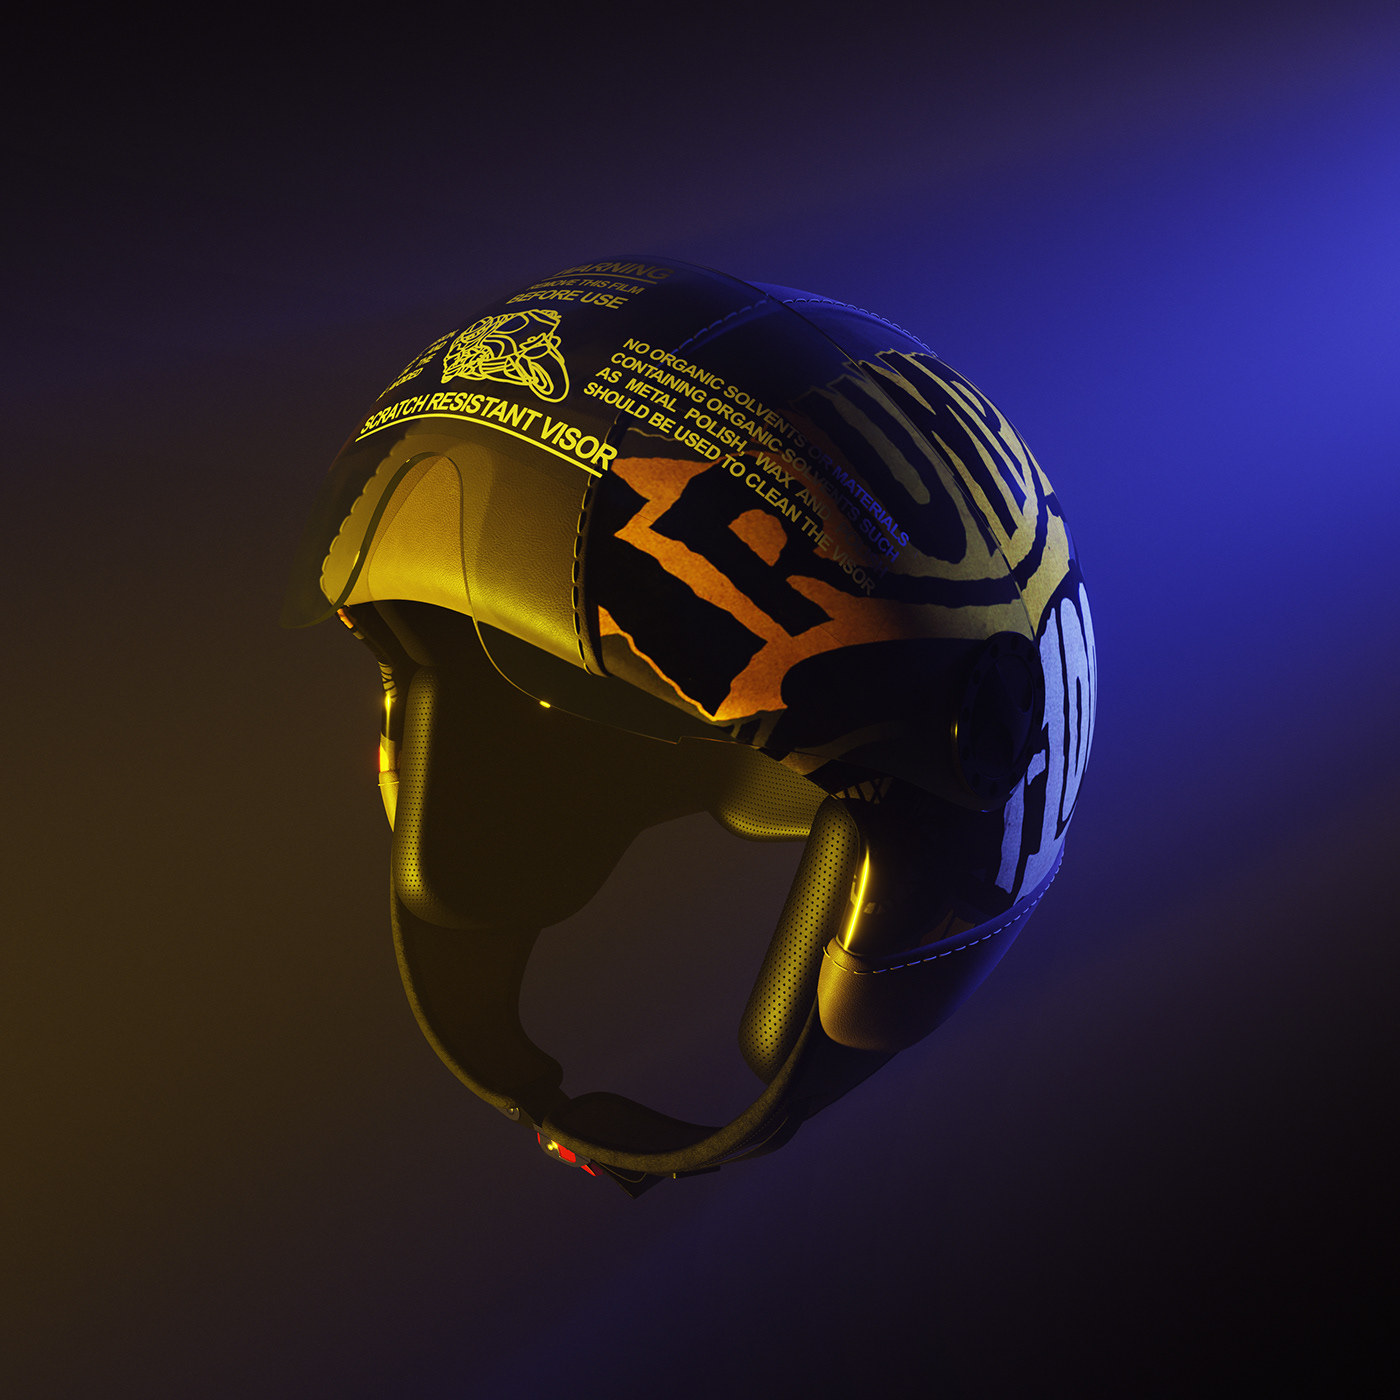 801 One BHR BHR Helmet Helmet moto helmet motorbike motorcycle